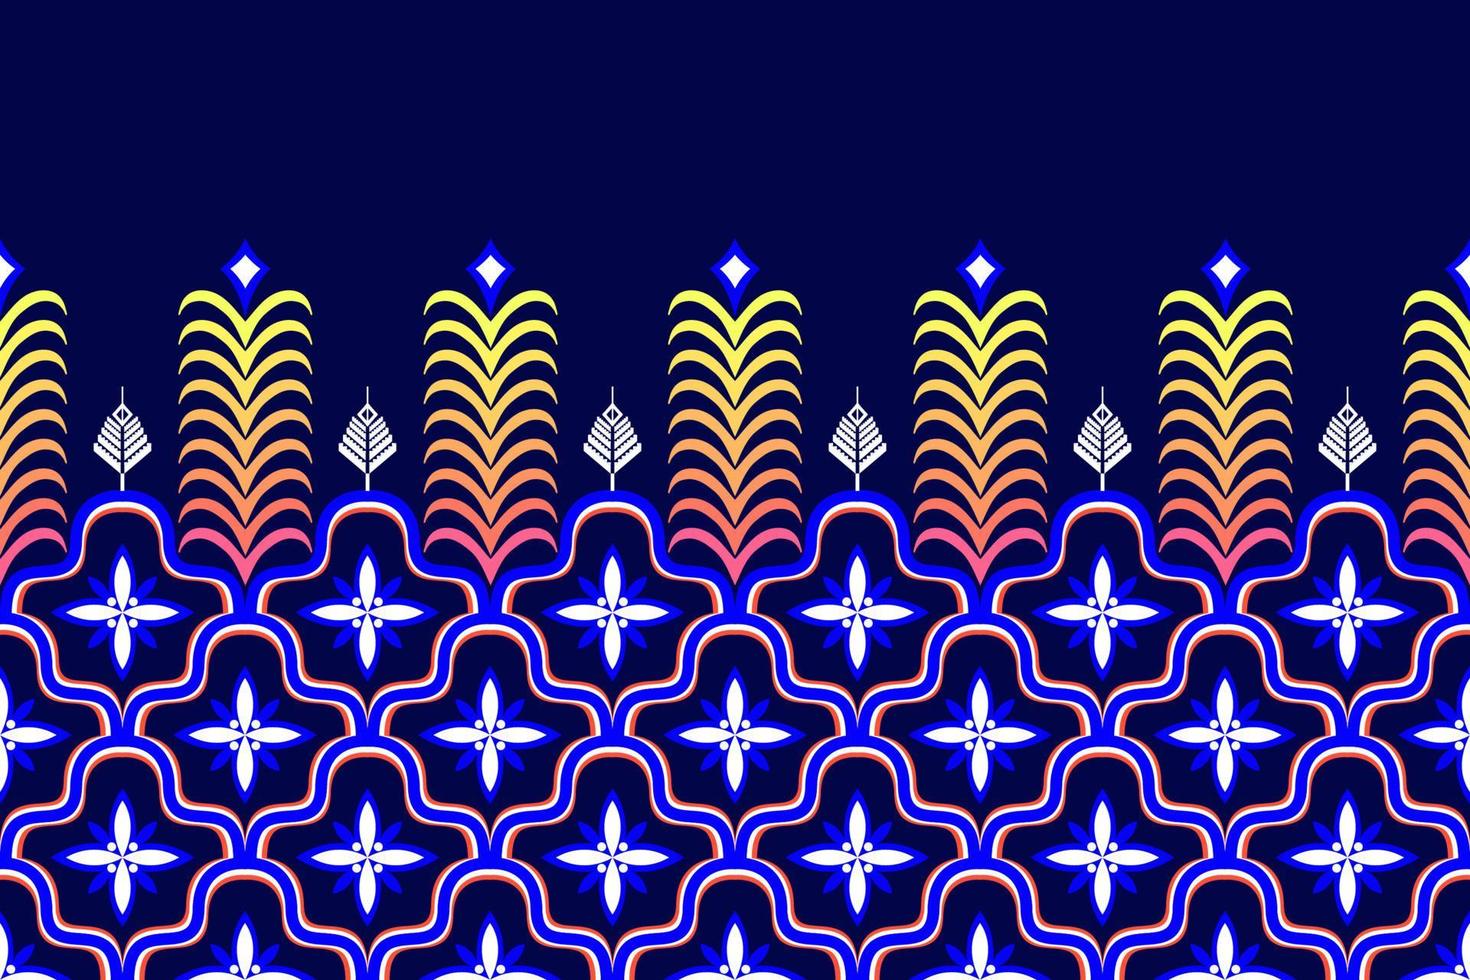 conception de motifs ethniques marocains. tapis en tissu aztèque ornement mandala chevron indigène décoration textile papier peint. dinde tribale broderie traditionnelle indienne africaine fond d'illustrations vectorielles vecteur